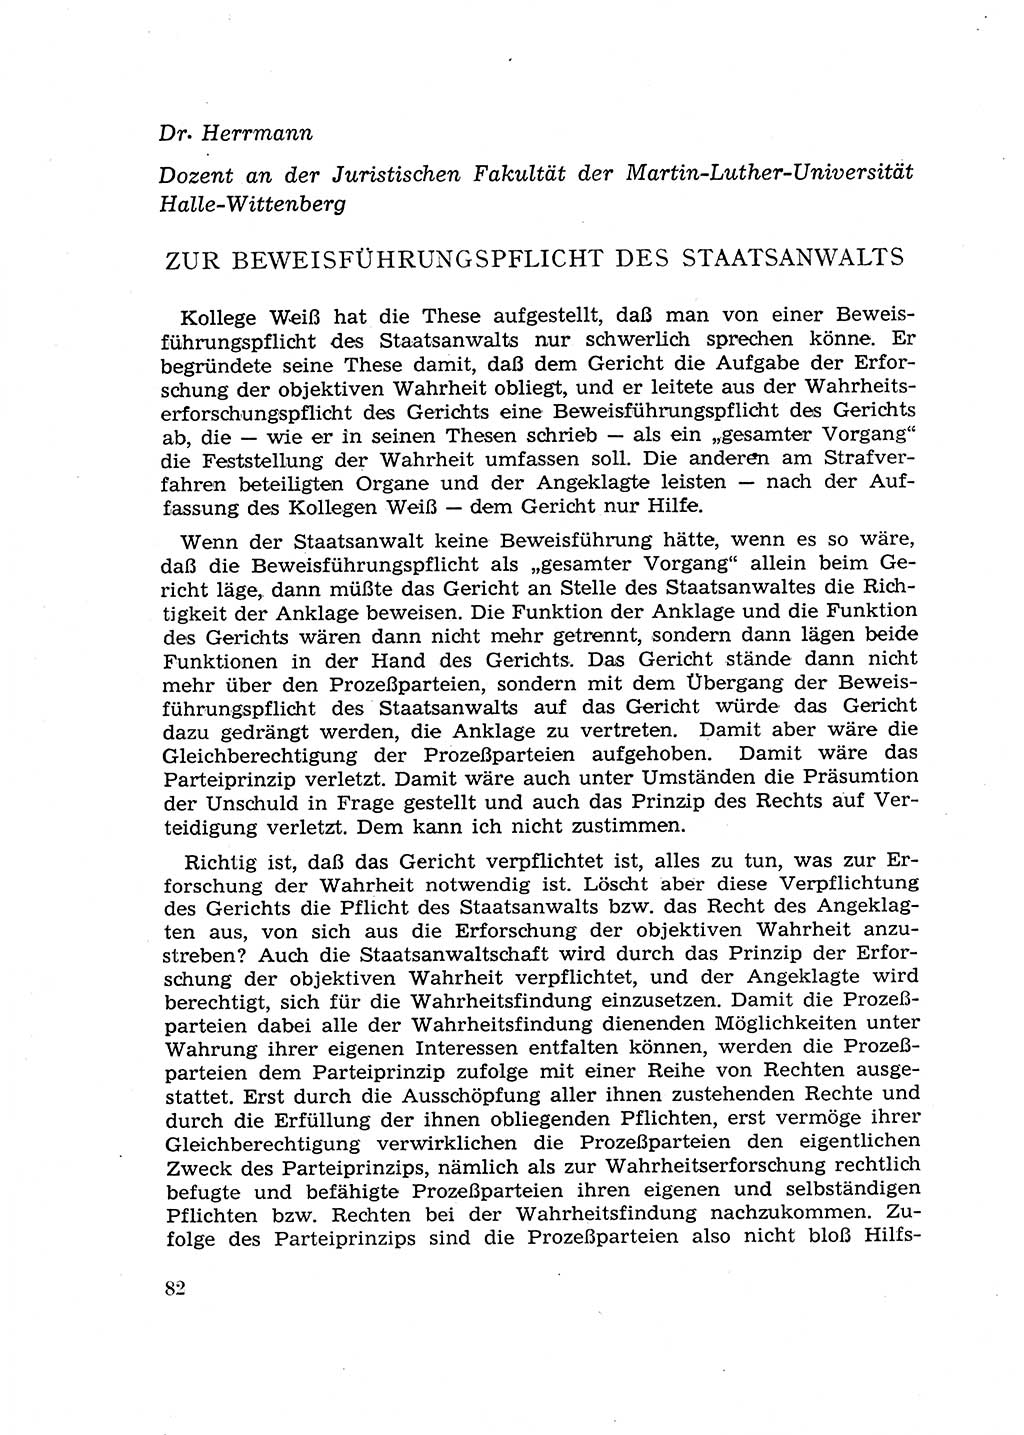 Fragen des Beweisrechts im Strafprozess [Deutsche Demokratische Republik (DDR)] 1956, Seite 82 (Fr. BeweisR. Str.-Proz. DDR 1956, S. 82)